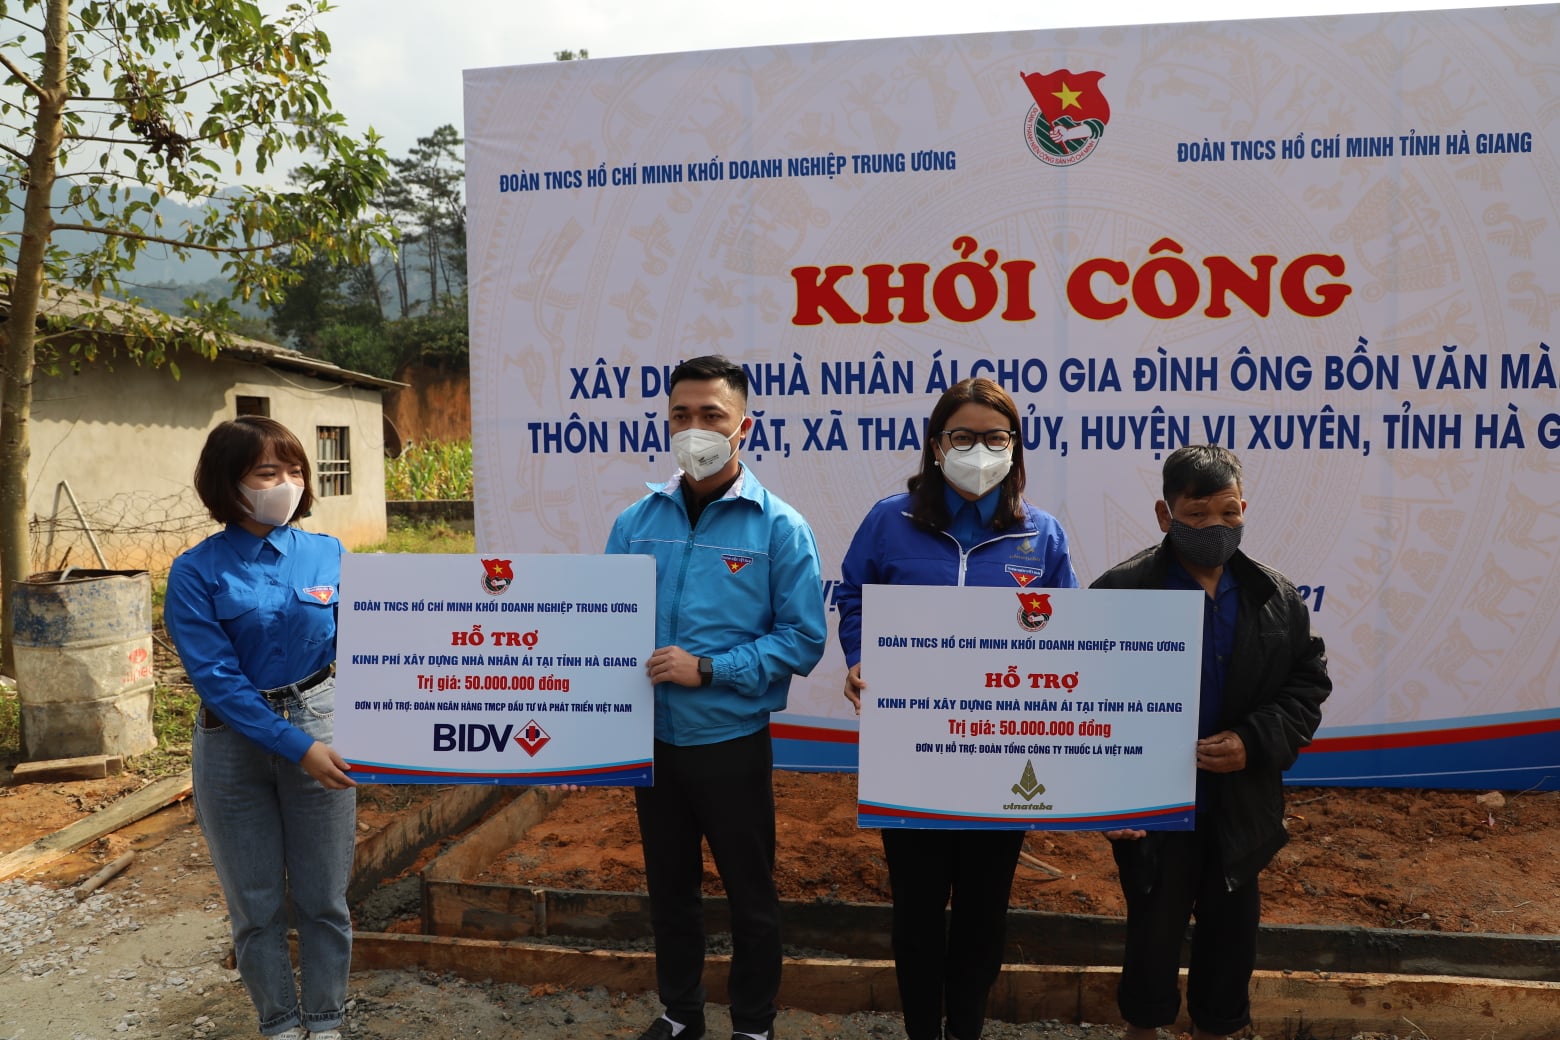 Đại diện các đơn vị hỗ trợ: Đoàn BIDV và Đoàn TCT Thuốc lá Việt Nam - Đoàn Khối DNTW trao tặng biển hỗ trợ kinh phí xây dựng nhà nhân ái cho Gia đình Ông Bồn Văn Mành và 01 gia đình hộ khó khăn tại tỉnh.